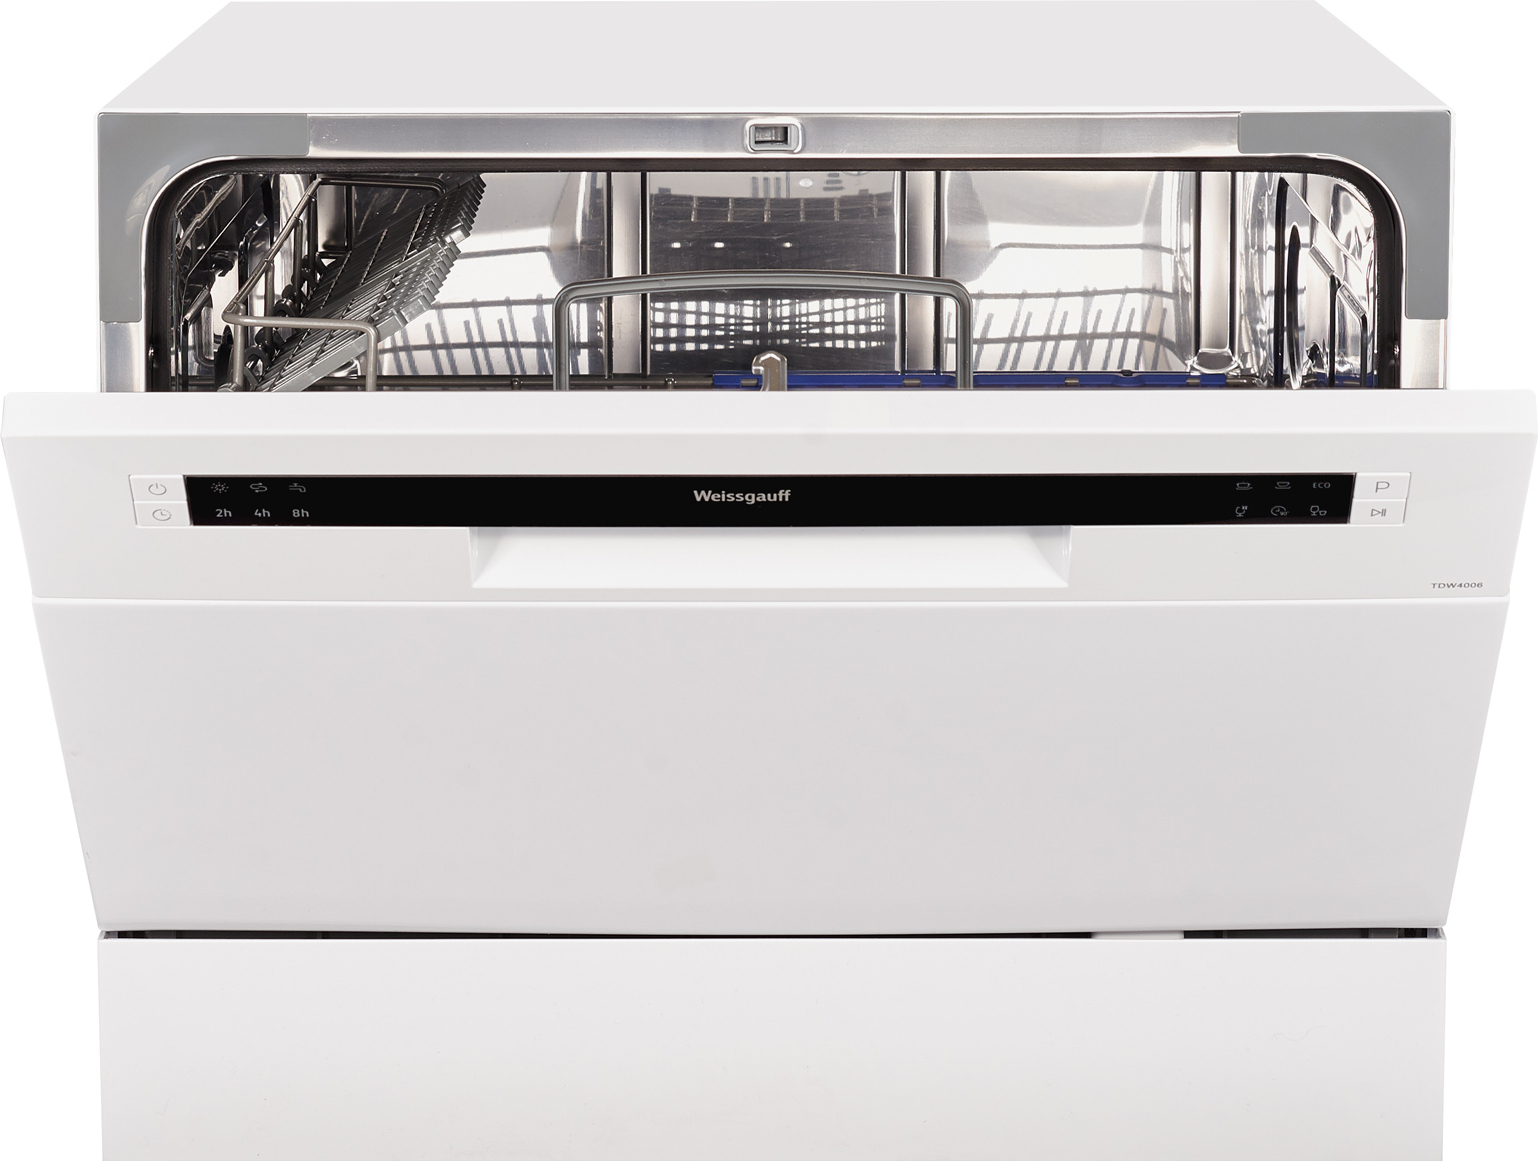 Купить в ростове посудомоечную. Посудомоечная машина Weissgauff TDW 4017 D. Посудомоечная машина Weissgauff TDW 4006 V. Посудомоечная машина (компактная) Weissgauff TDW 4006. Посудомоечная машина (компактная) Weissgauff TDW 4017 D.